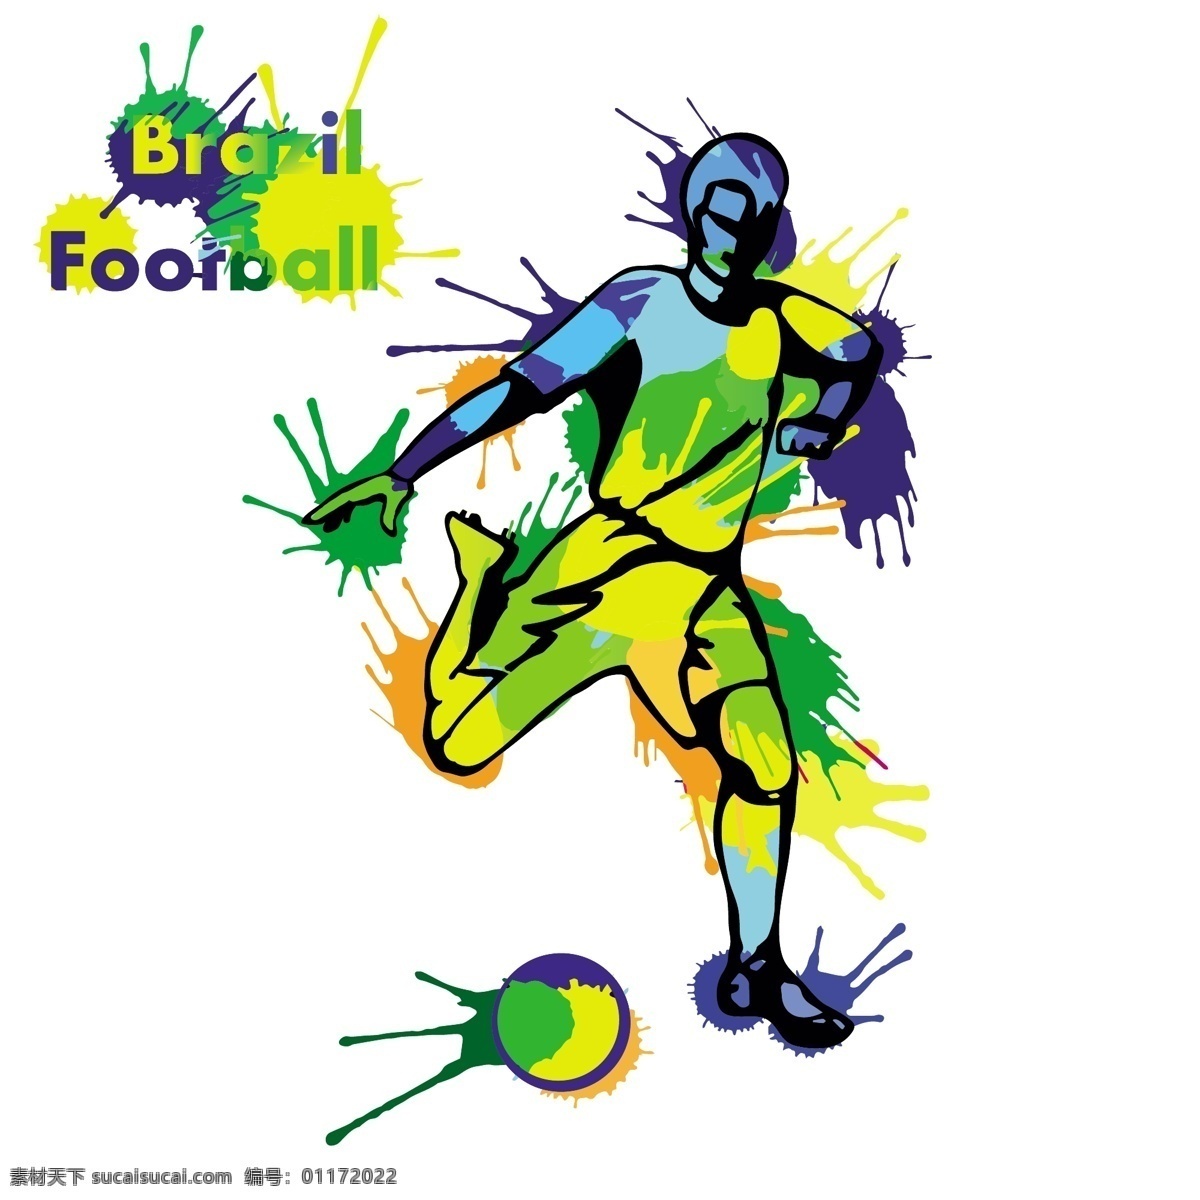 水墨 喷溅 球员 插画 模板下载 水墨喷溅 巴西 足球 世界杯 足球赛事 足球比赛 体育运动 生活百科 矢量素材 白色